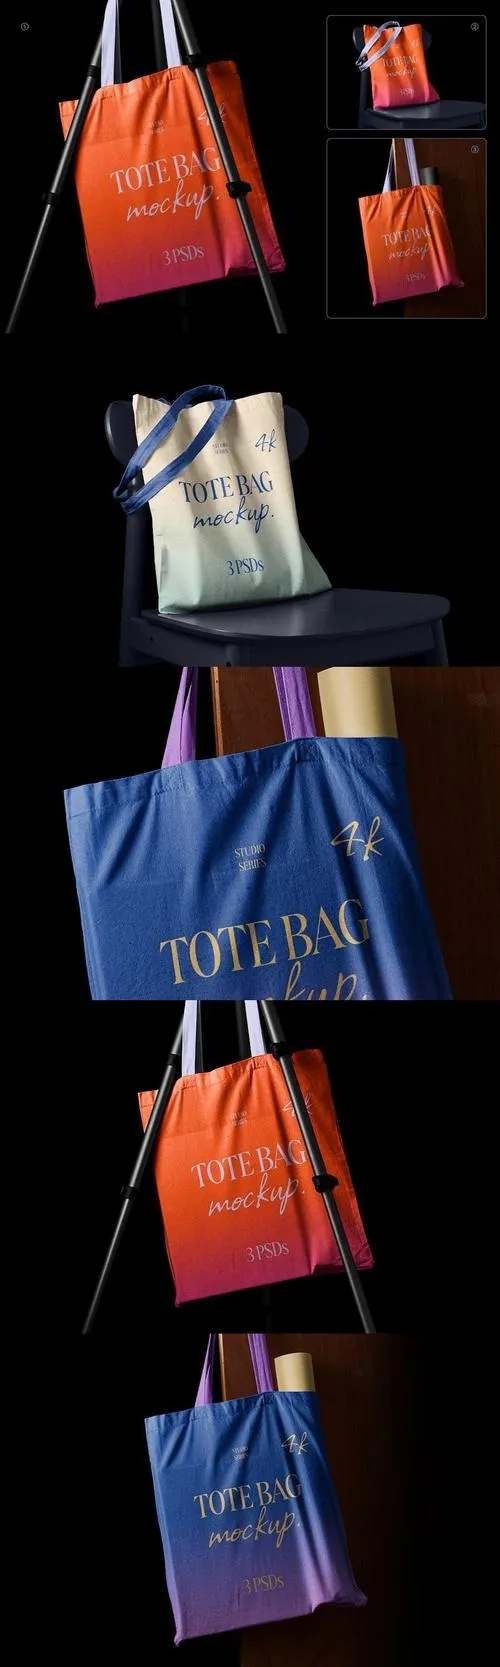 Tote bag mockups - Studio series